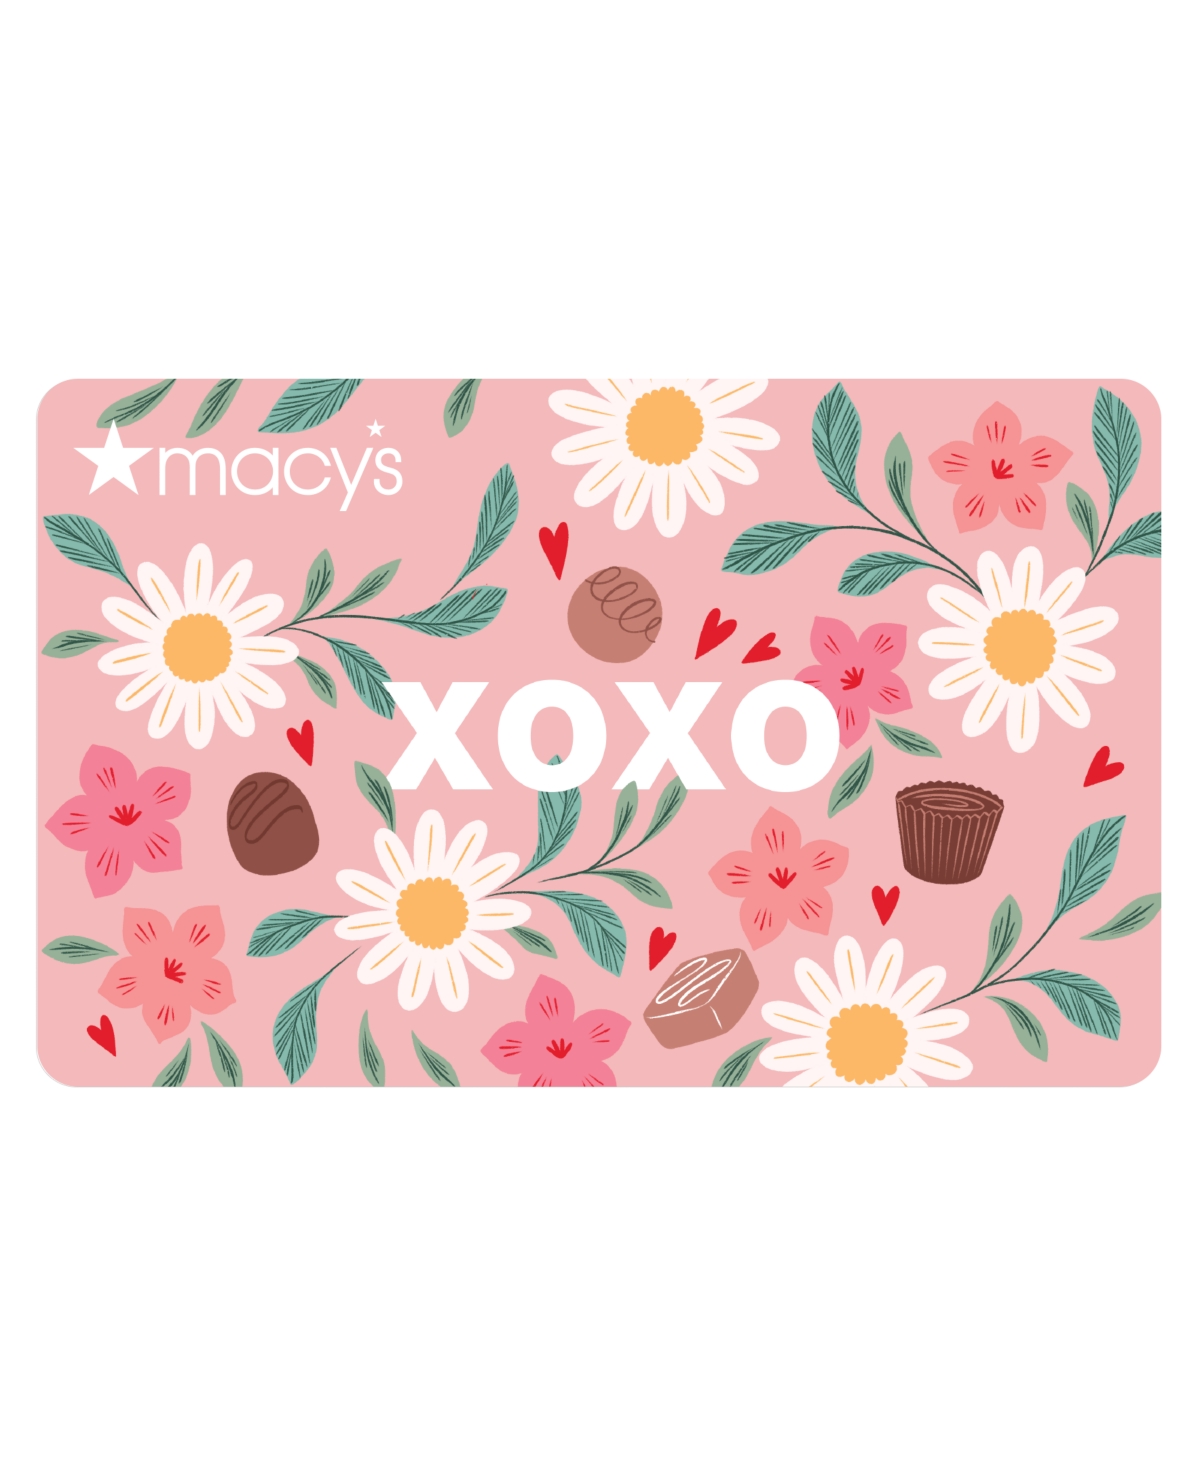 Xoxo E-Gift Card